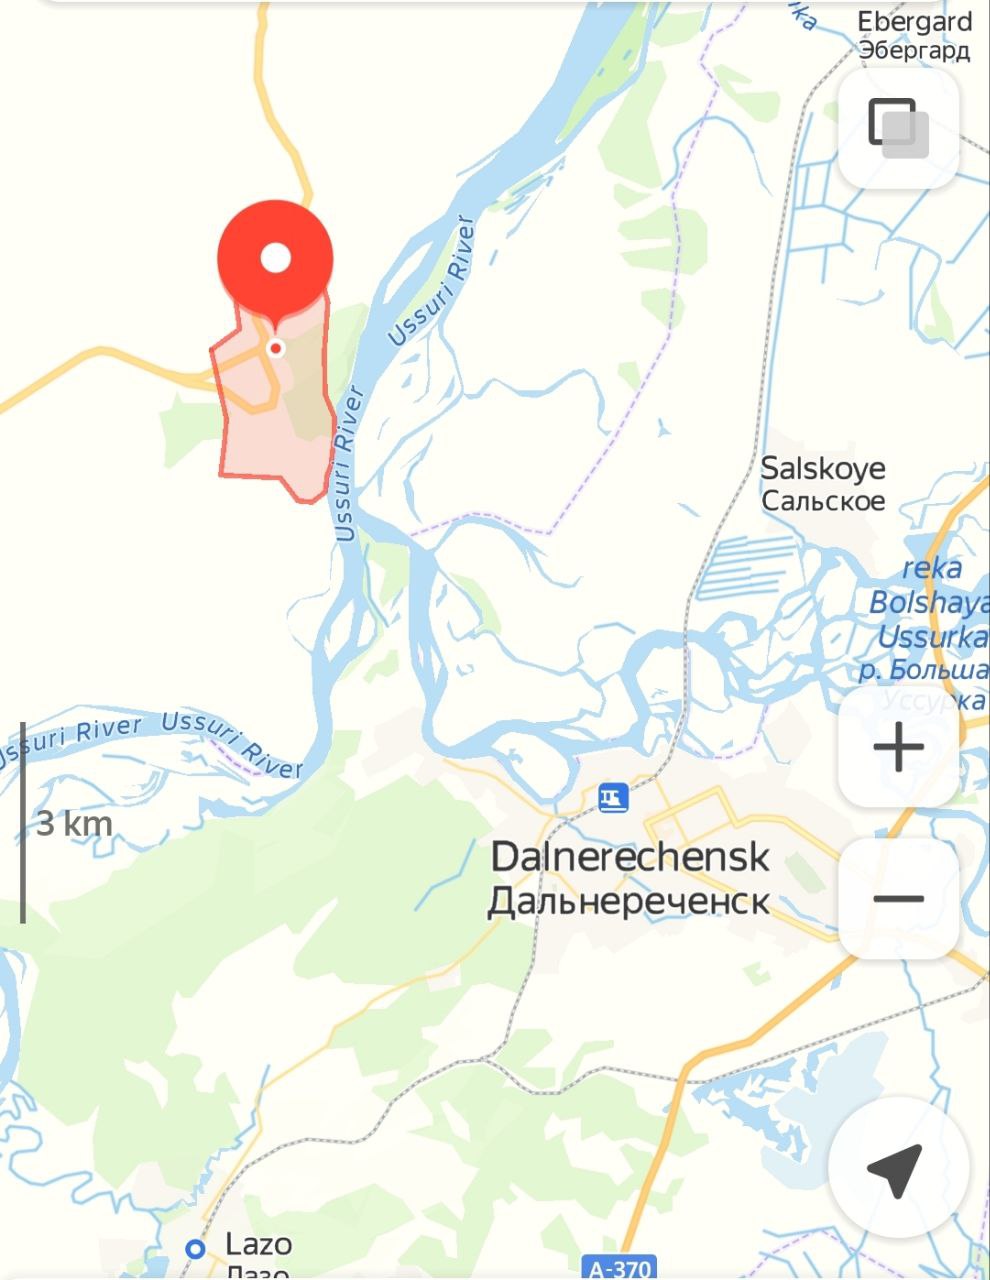 Скриншот: Яндекс.Карты